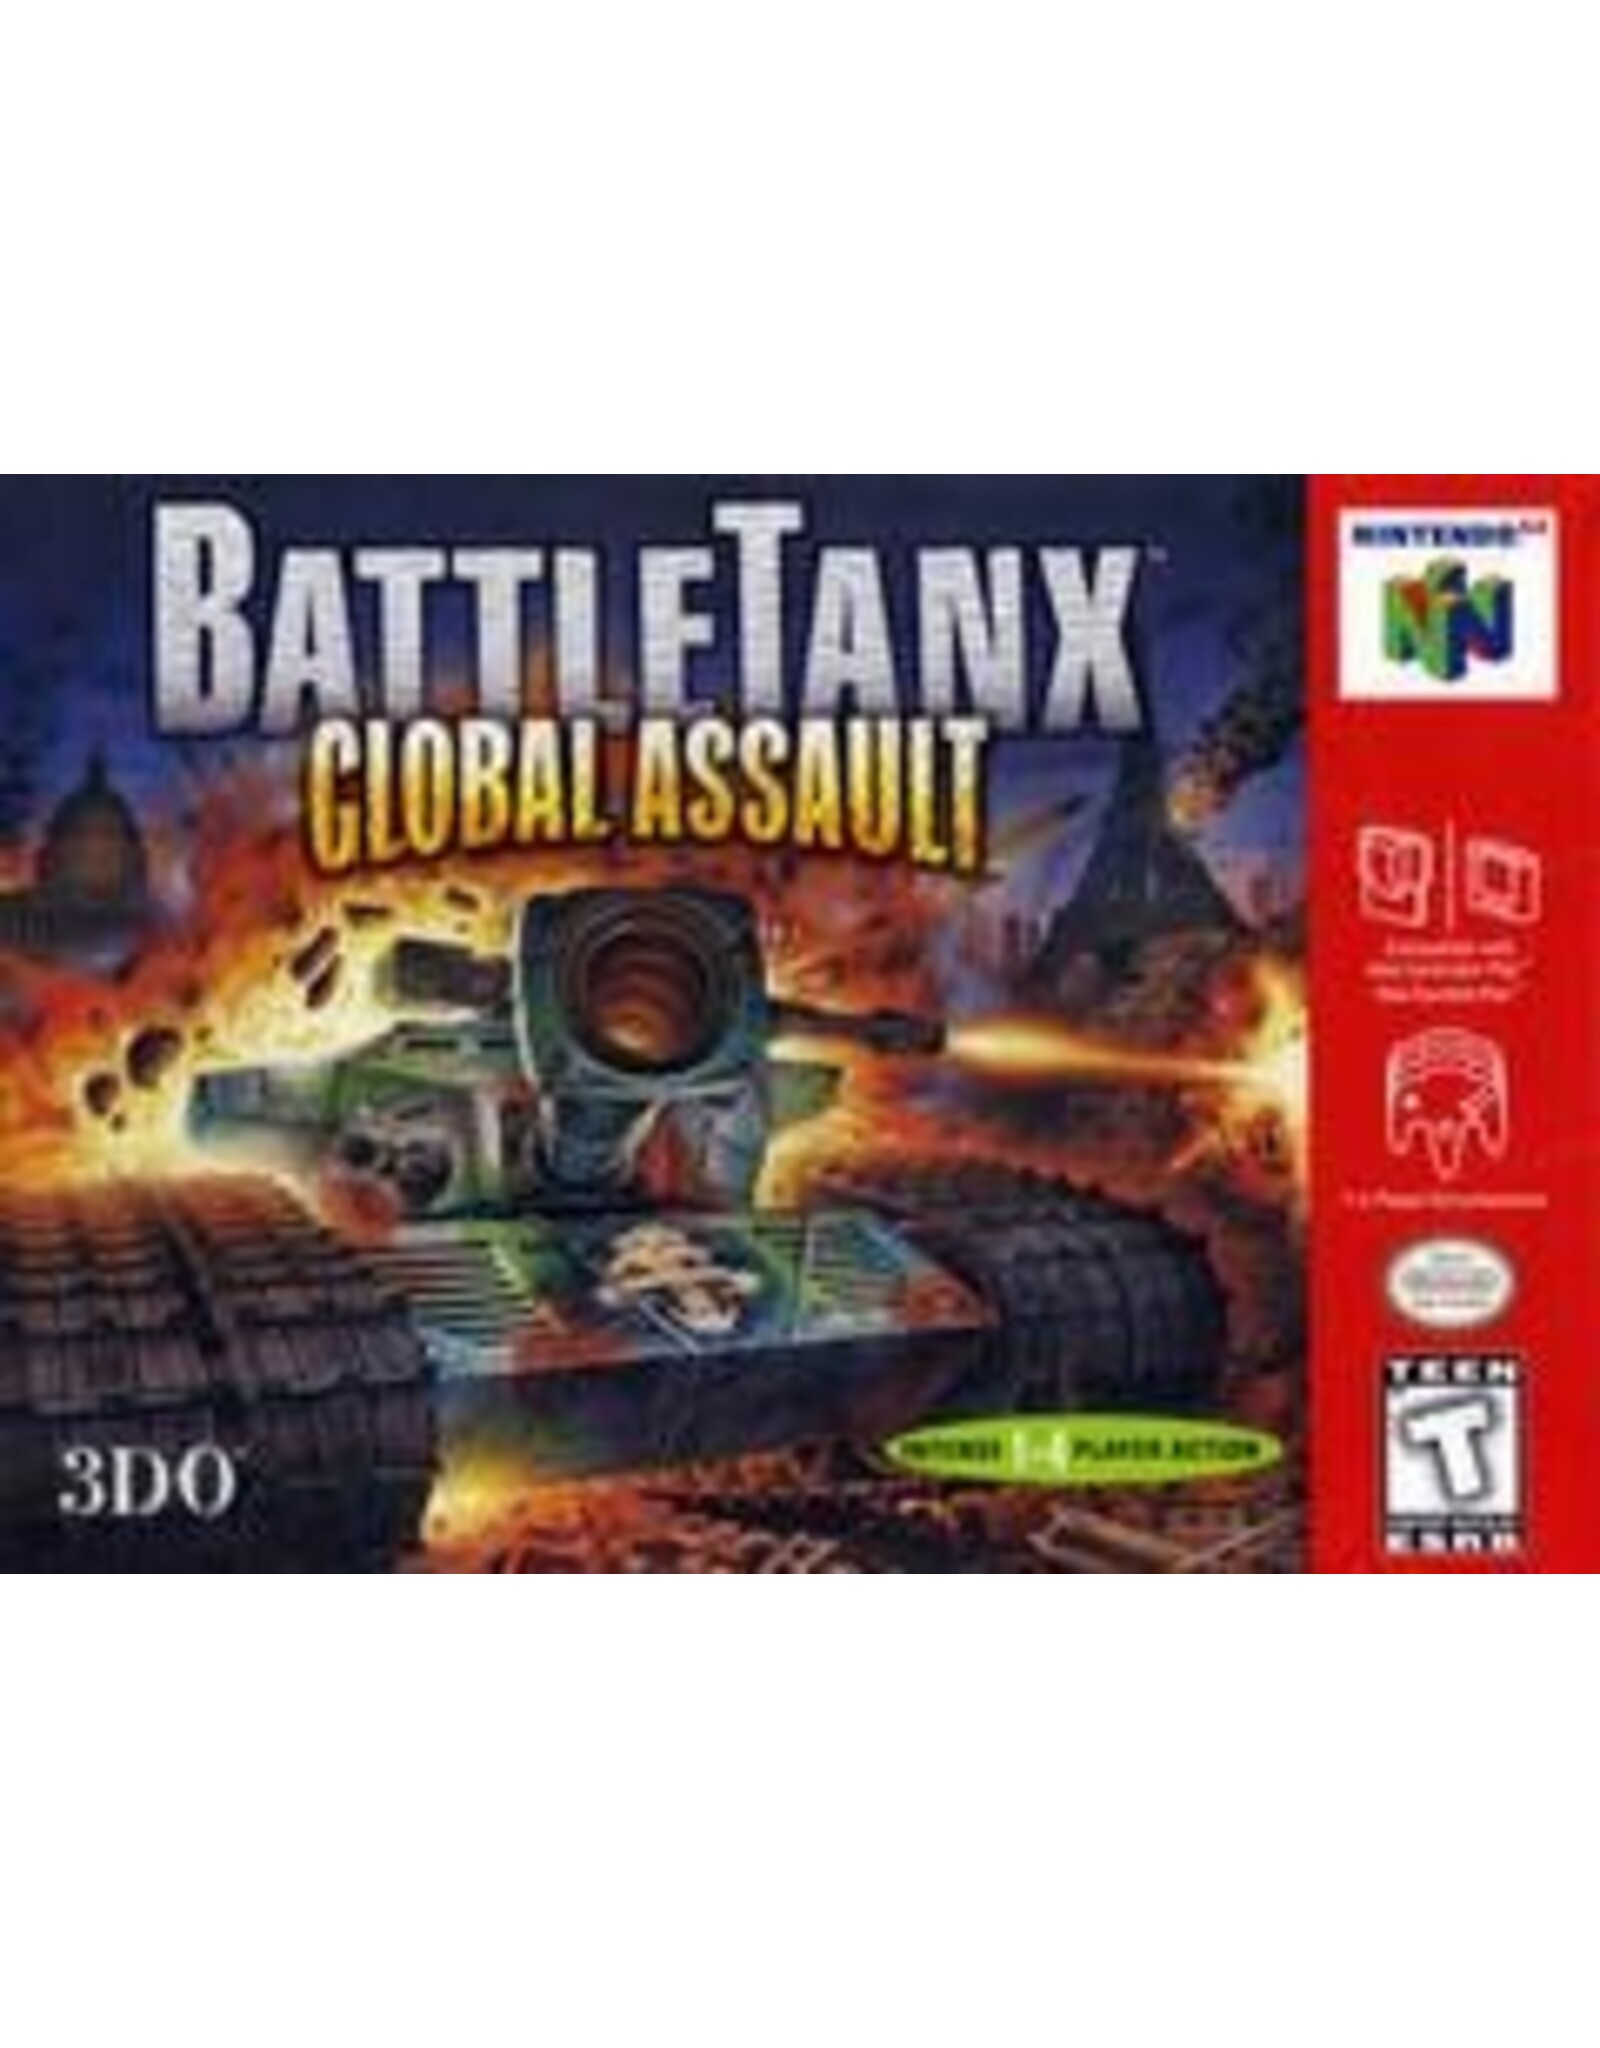 Nintendo 64 Battletanx Global Assault (Cart Only, Cosmetic Damage)